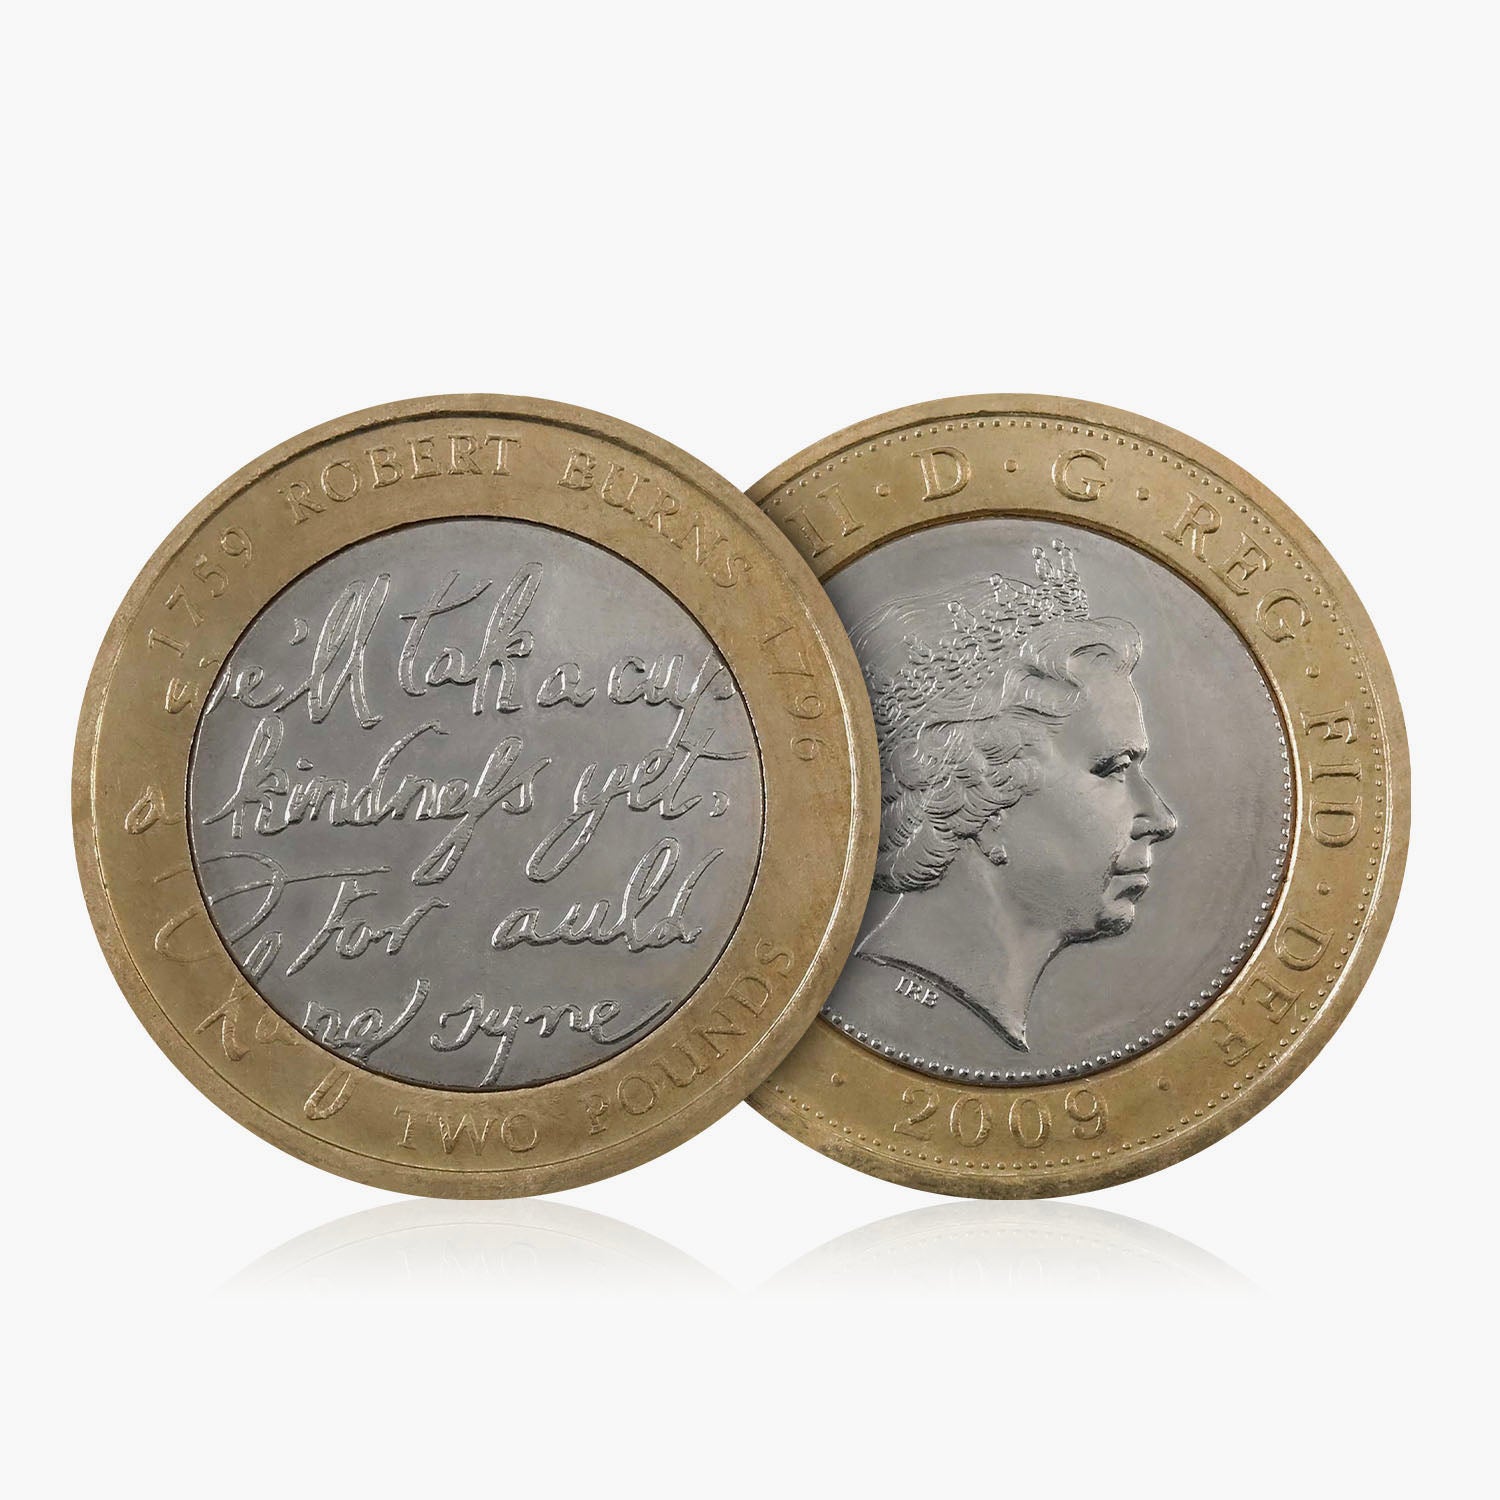 2009 Circulated Robert Burns UK £2 Coin